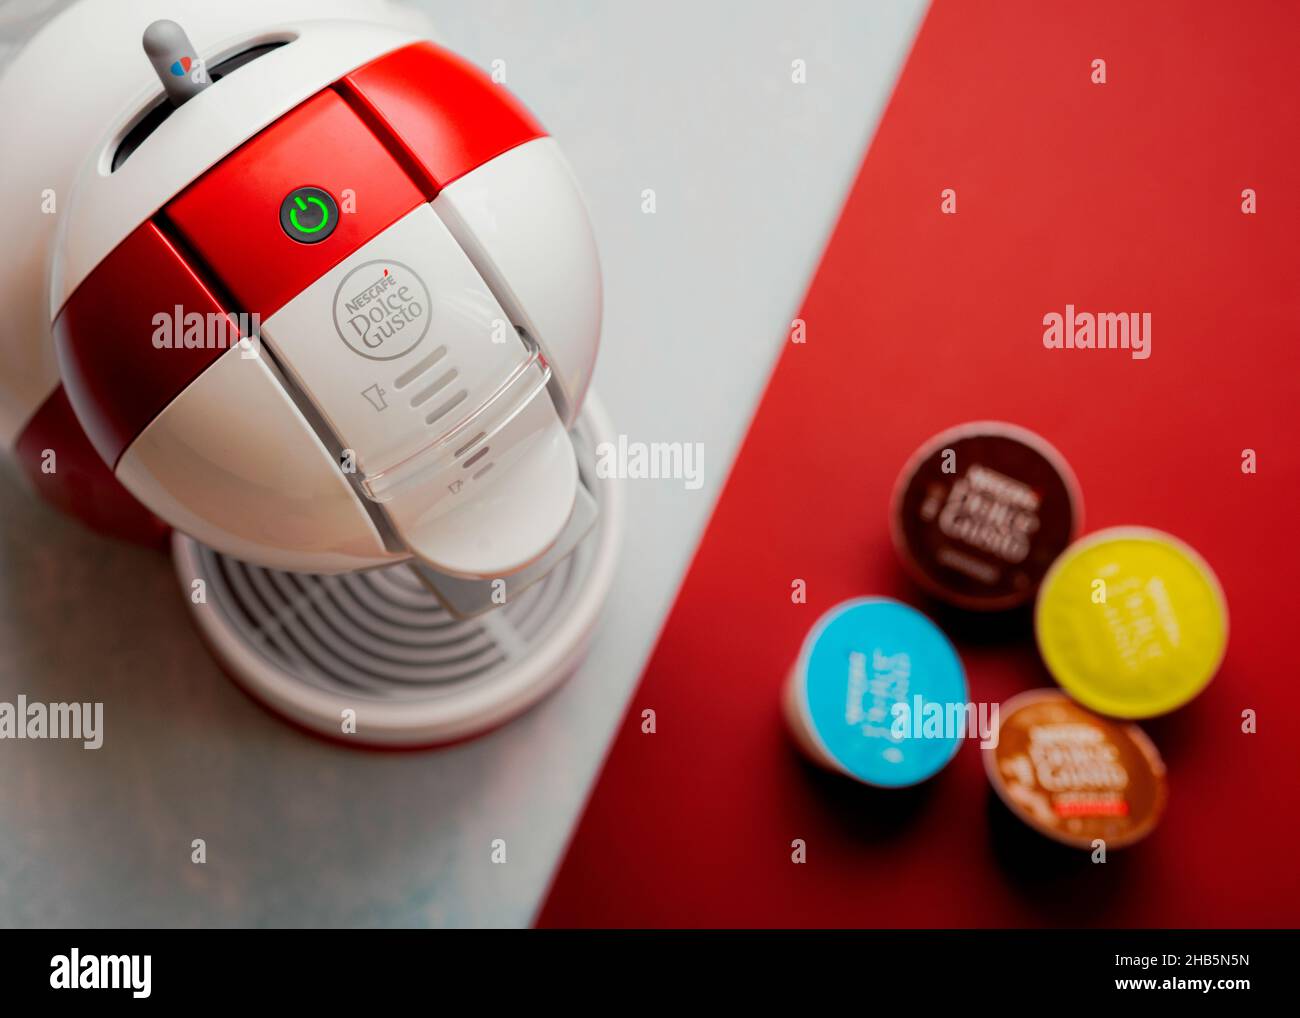 Macchina da caffè Nescafe Dolce gusto Krups di colore rosso su un bancone  della cucina, che utilizza un sistema di capsule di caffè preconfezionate  per preparare la bevanda calda Foto stock 